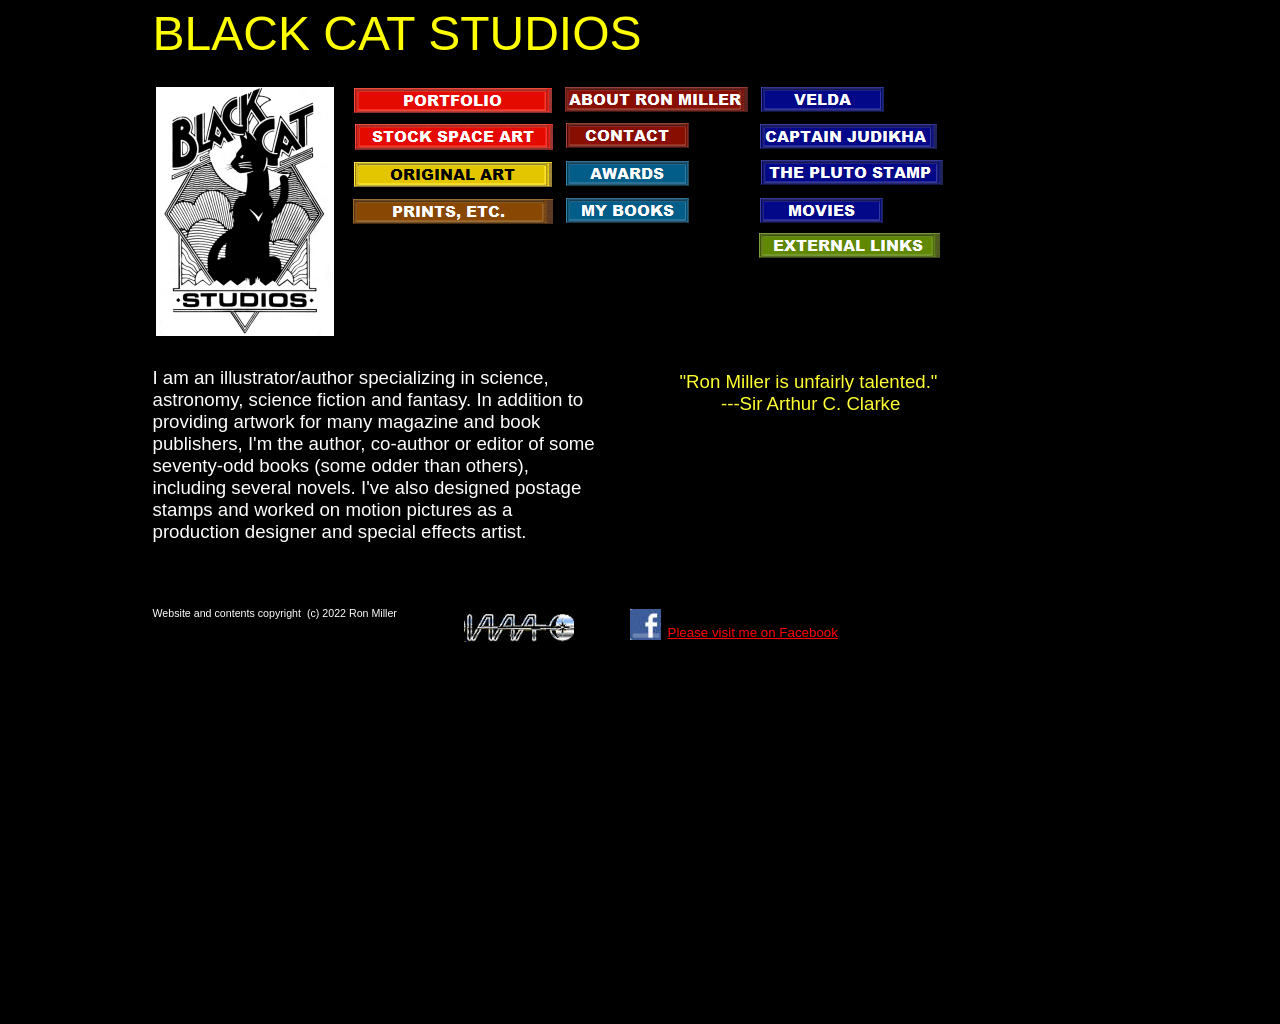 black-cat-studios.com